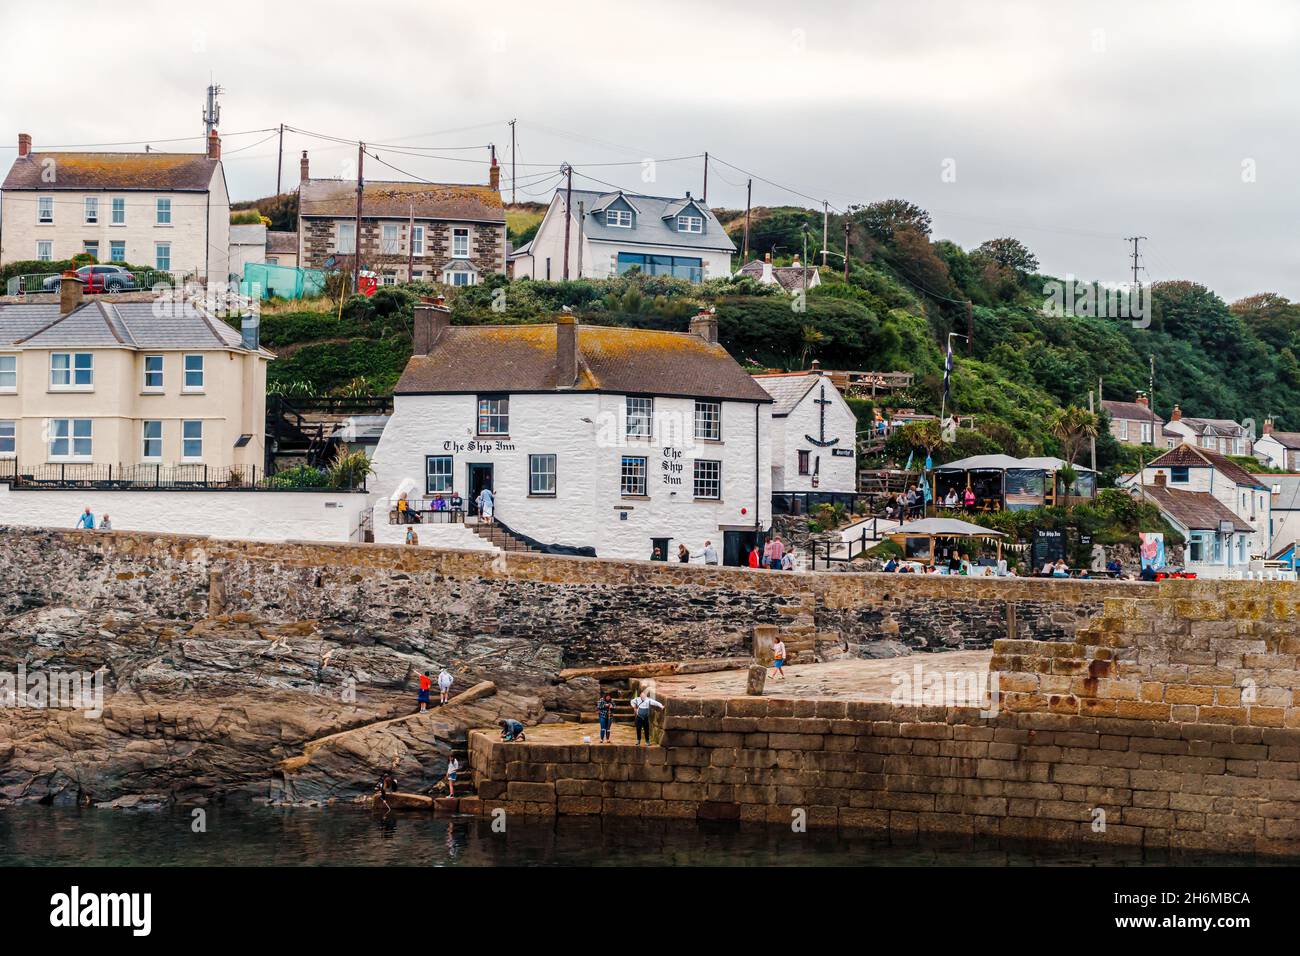 The Ship Inn Pub am Hafen von Porthleven, Cornwall, Großbritannien Stockfoto